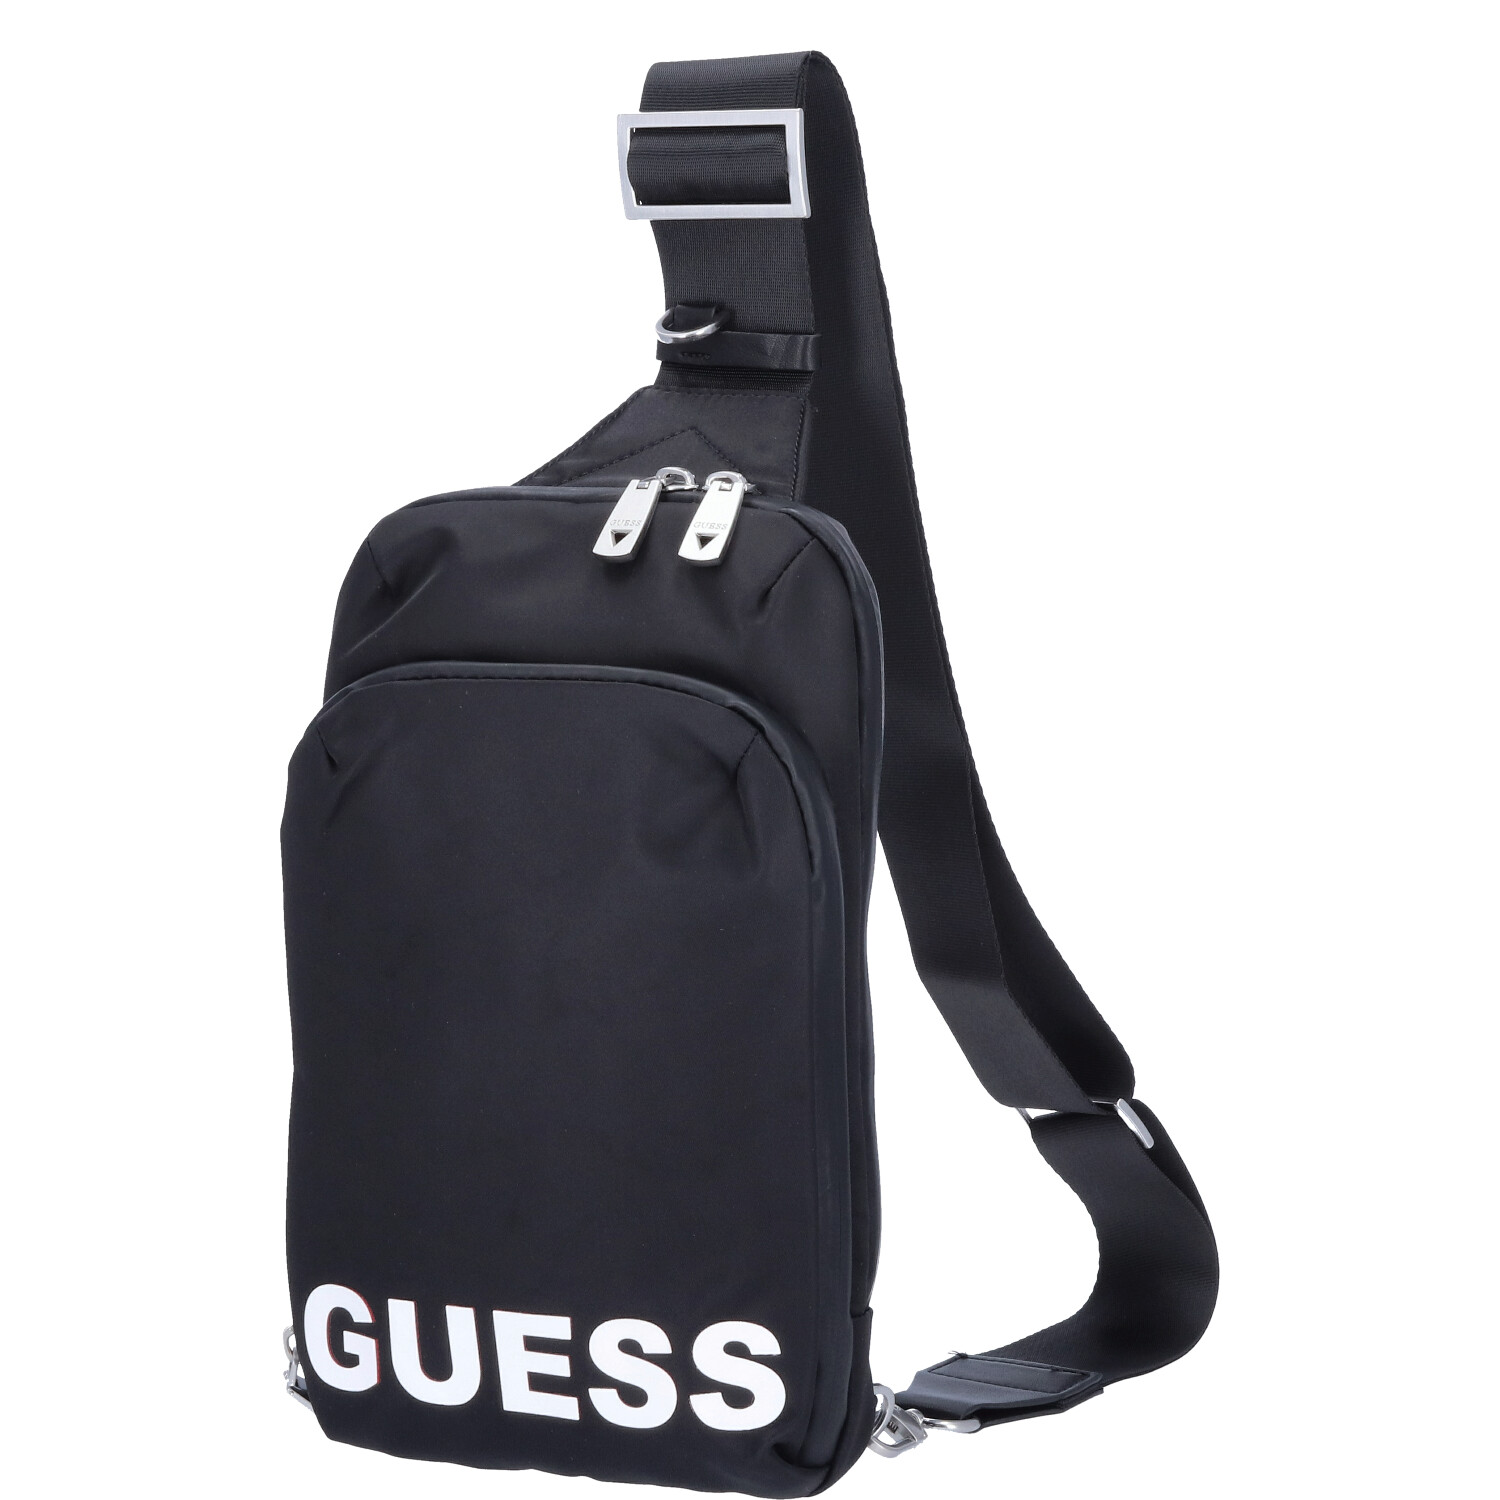 GUESS Crossover Bodybag Maxi Logo Black